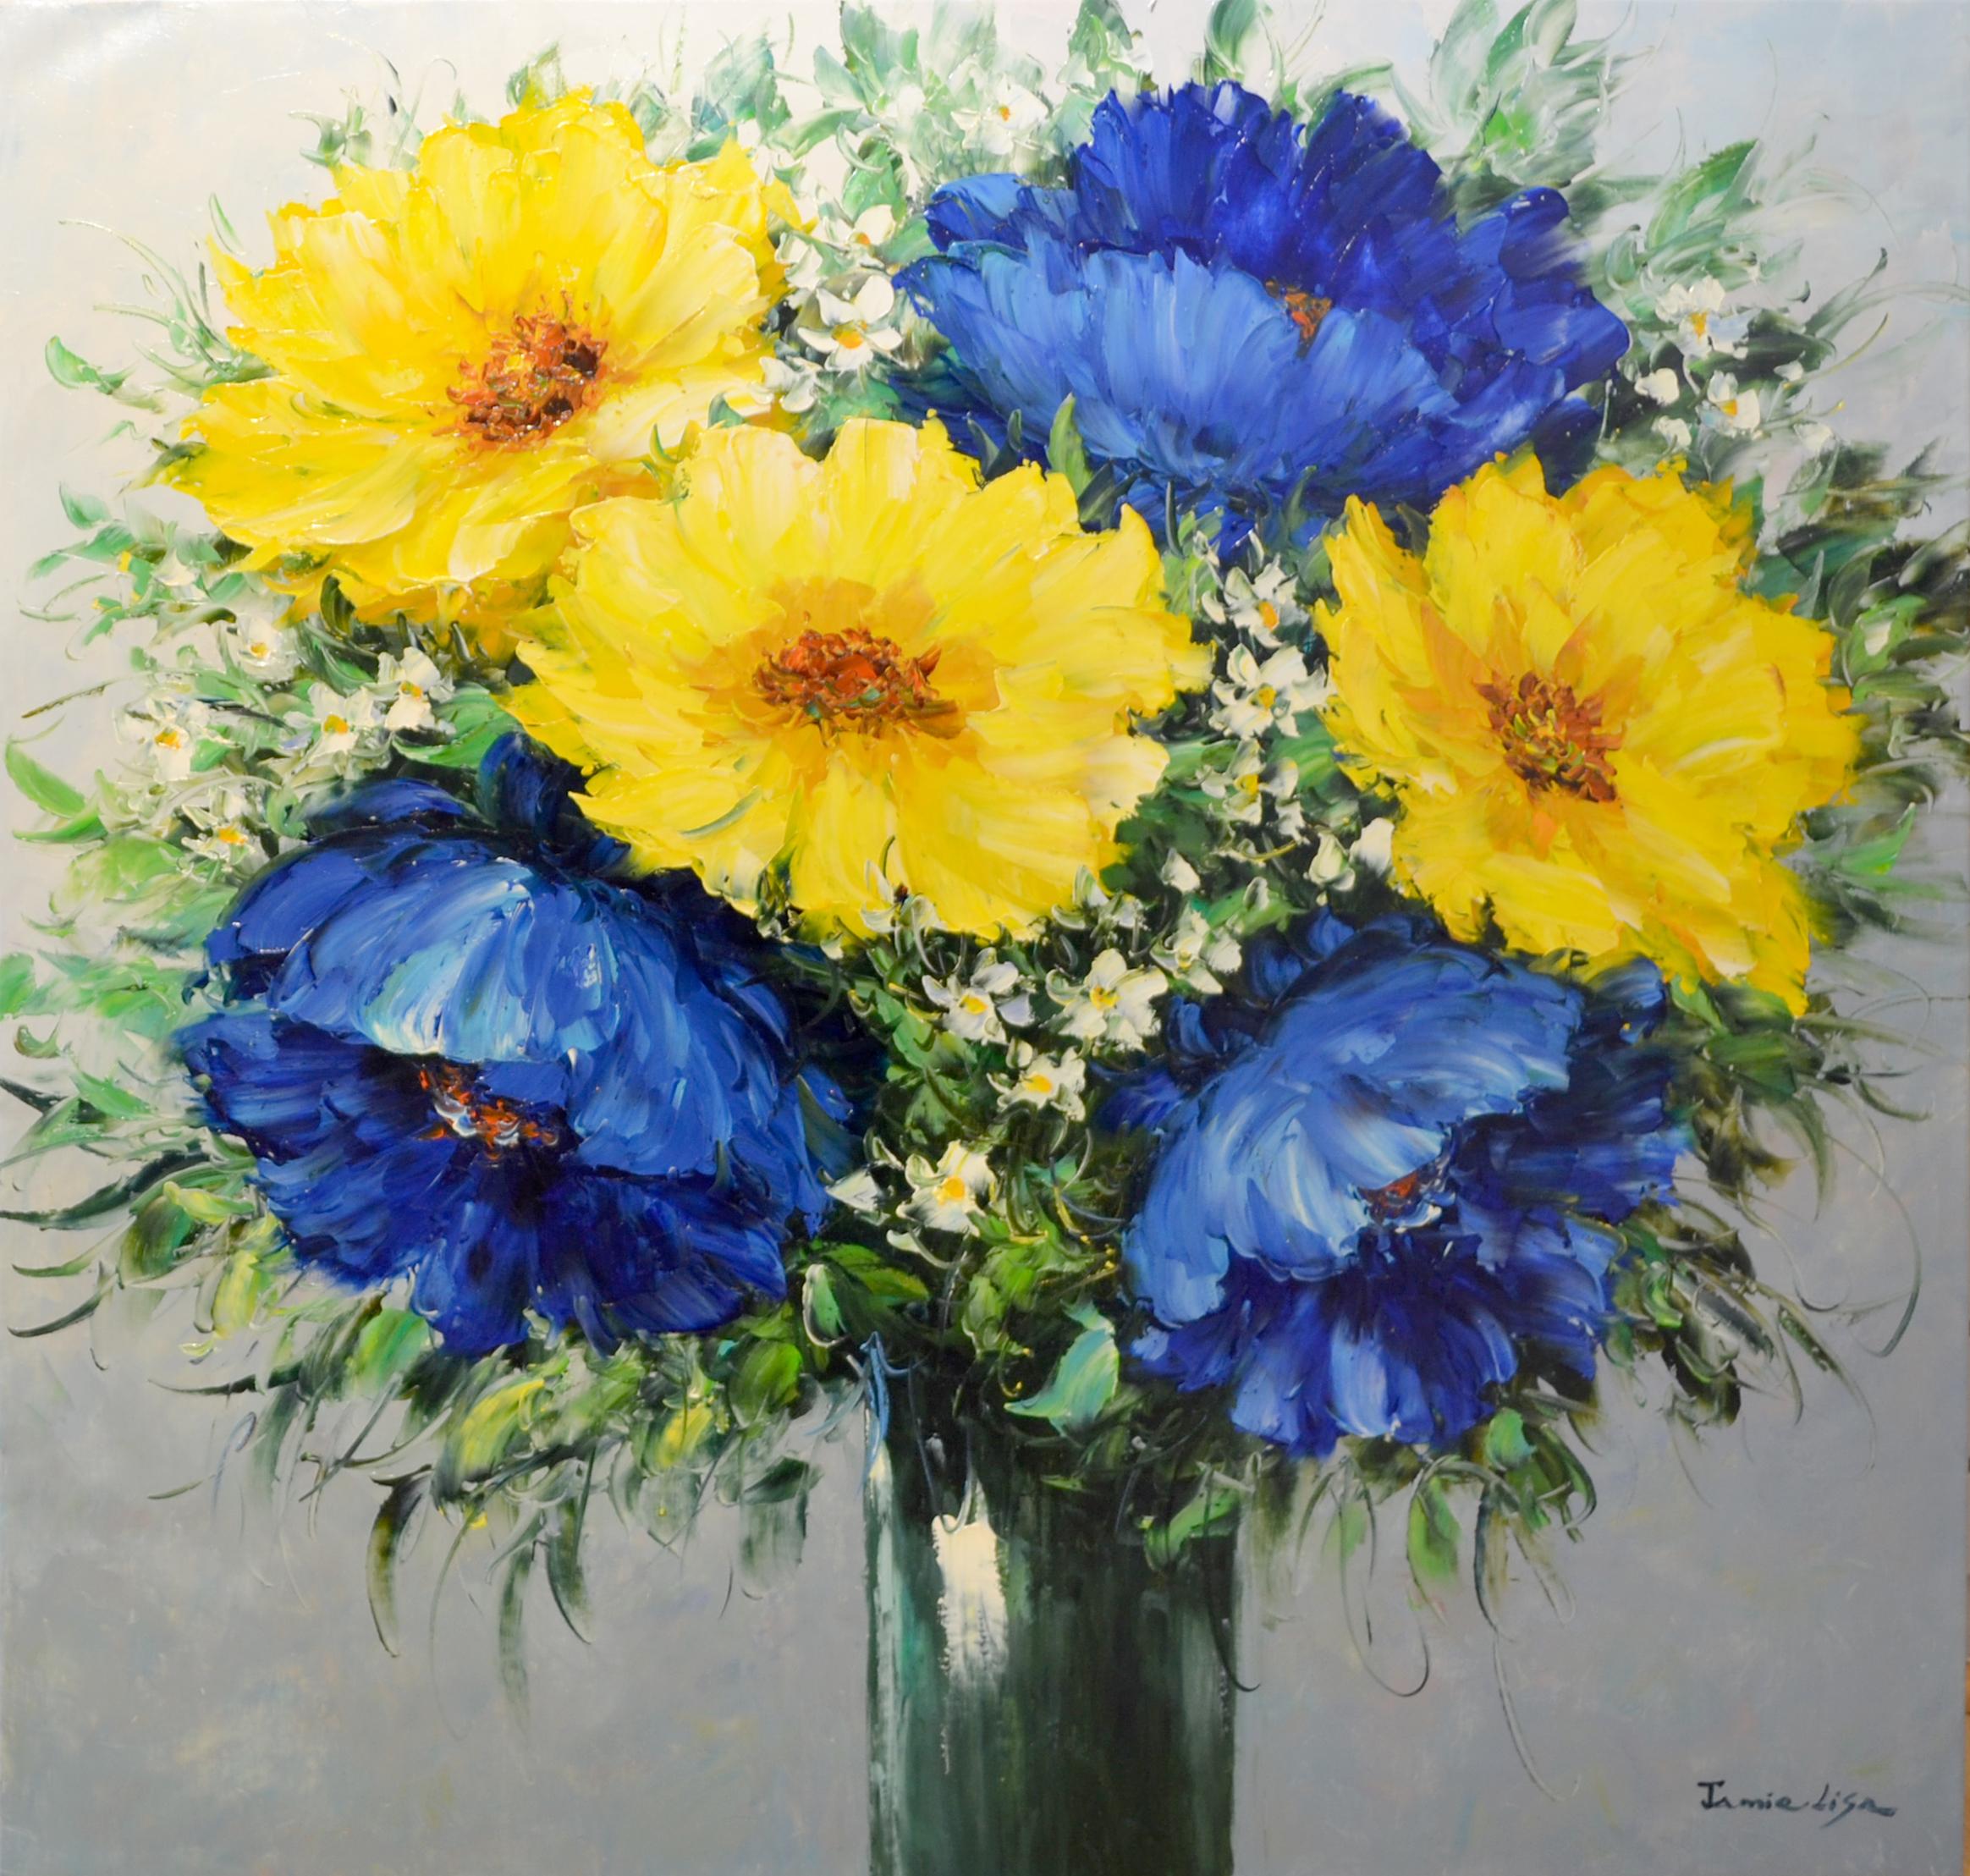 Cette œuvre "Blue and Yellow Poppies" est une peinture originale à l'huile sur toile de 36x36 de l'artiste Jamie Lisa. Le reportage est une nature morte  d'une gerbe de coquelicots bleus et jaunes. La technique de Lisa crée un style impressionniste